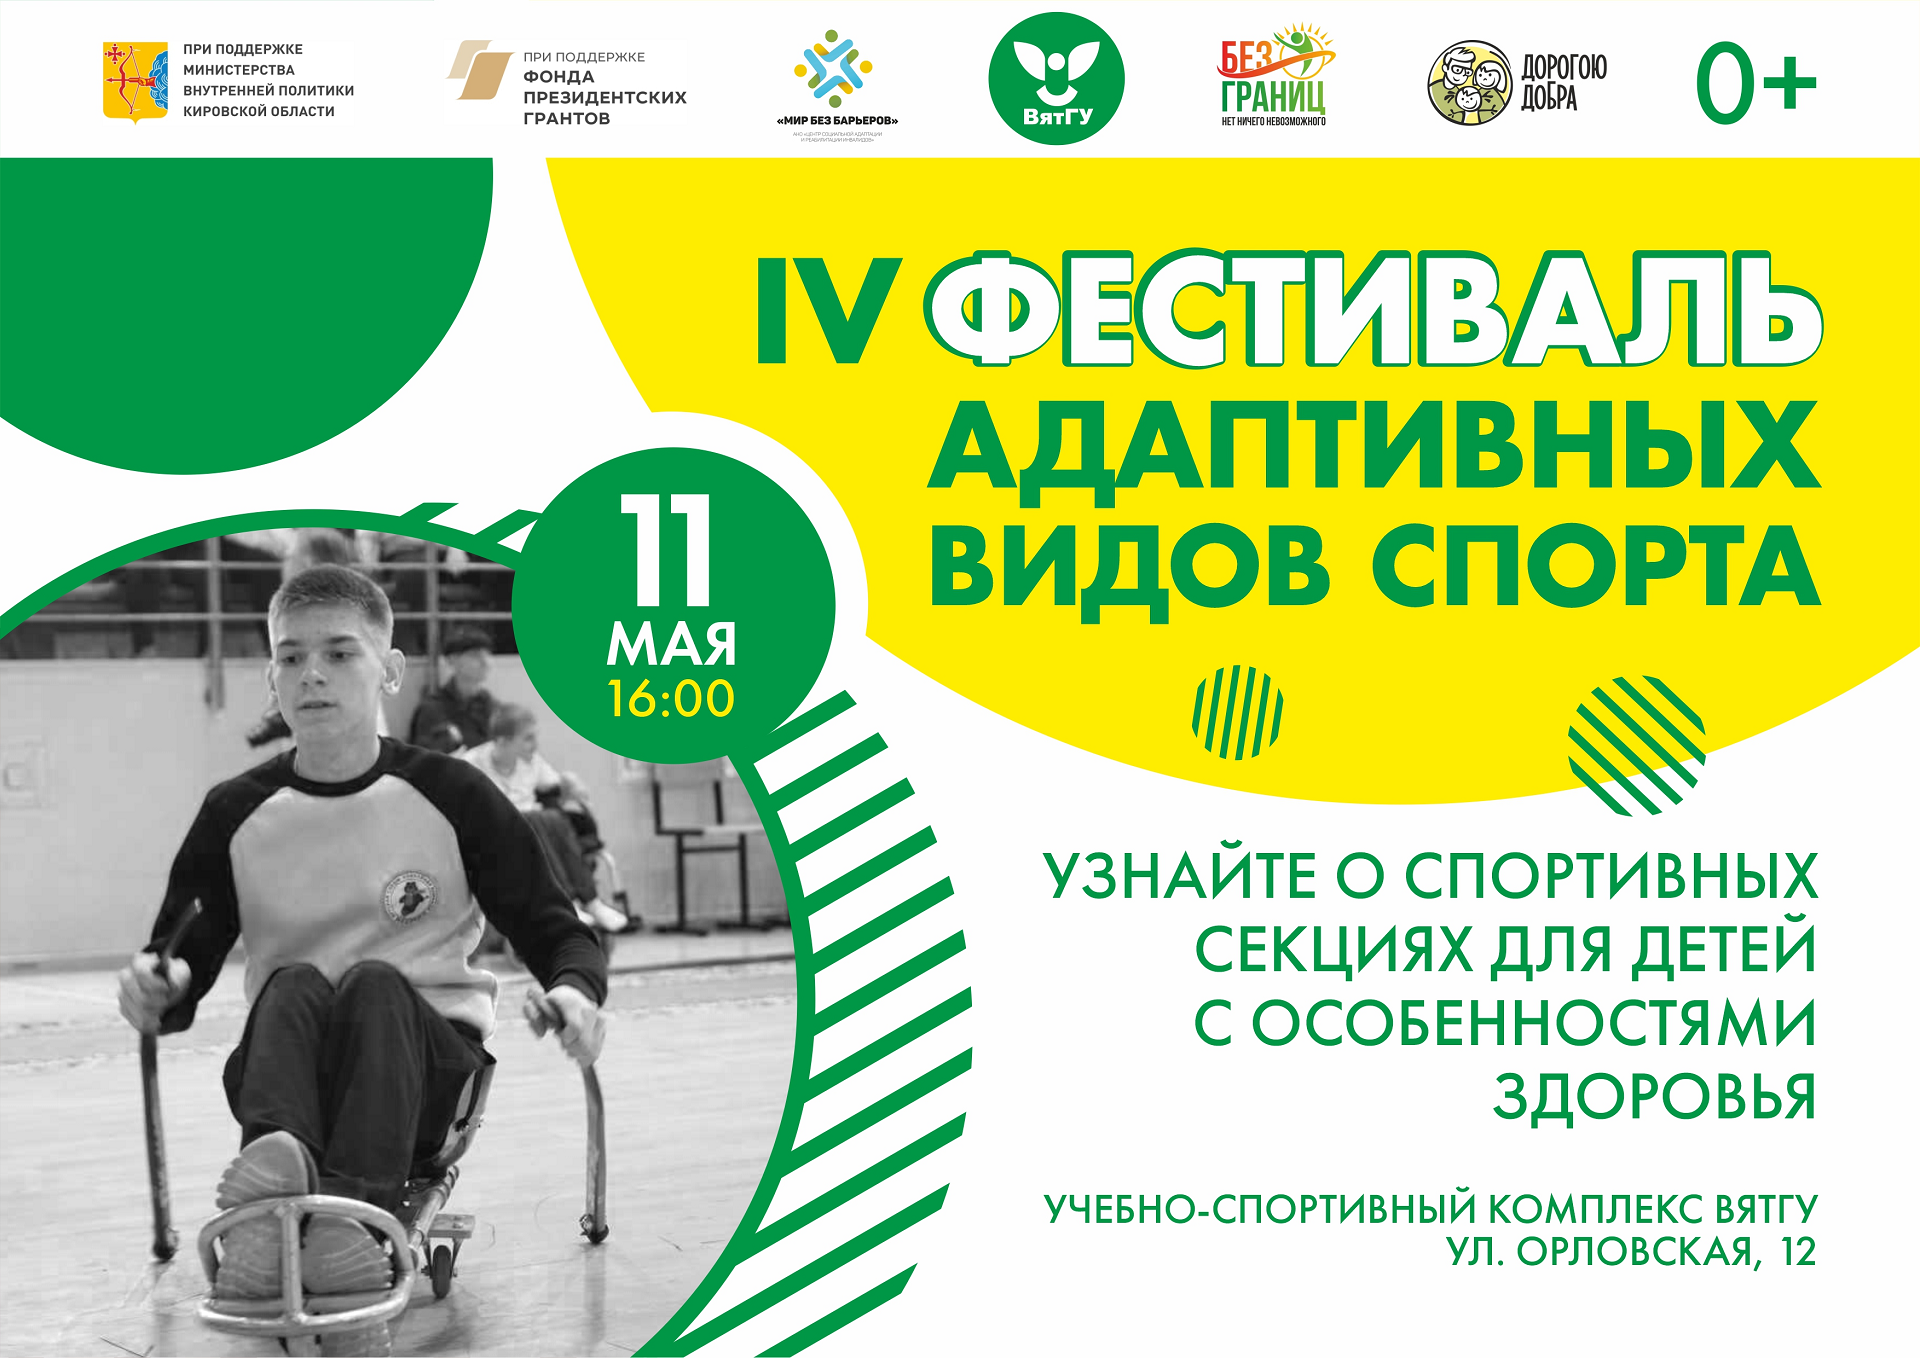 ВятГУ приглашает на IV Фестиваль адаптивных видов спорта